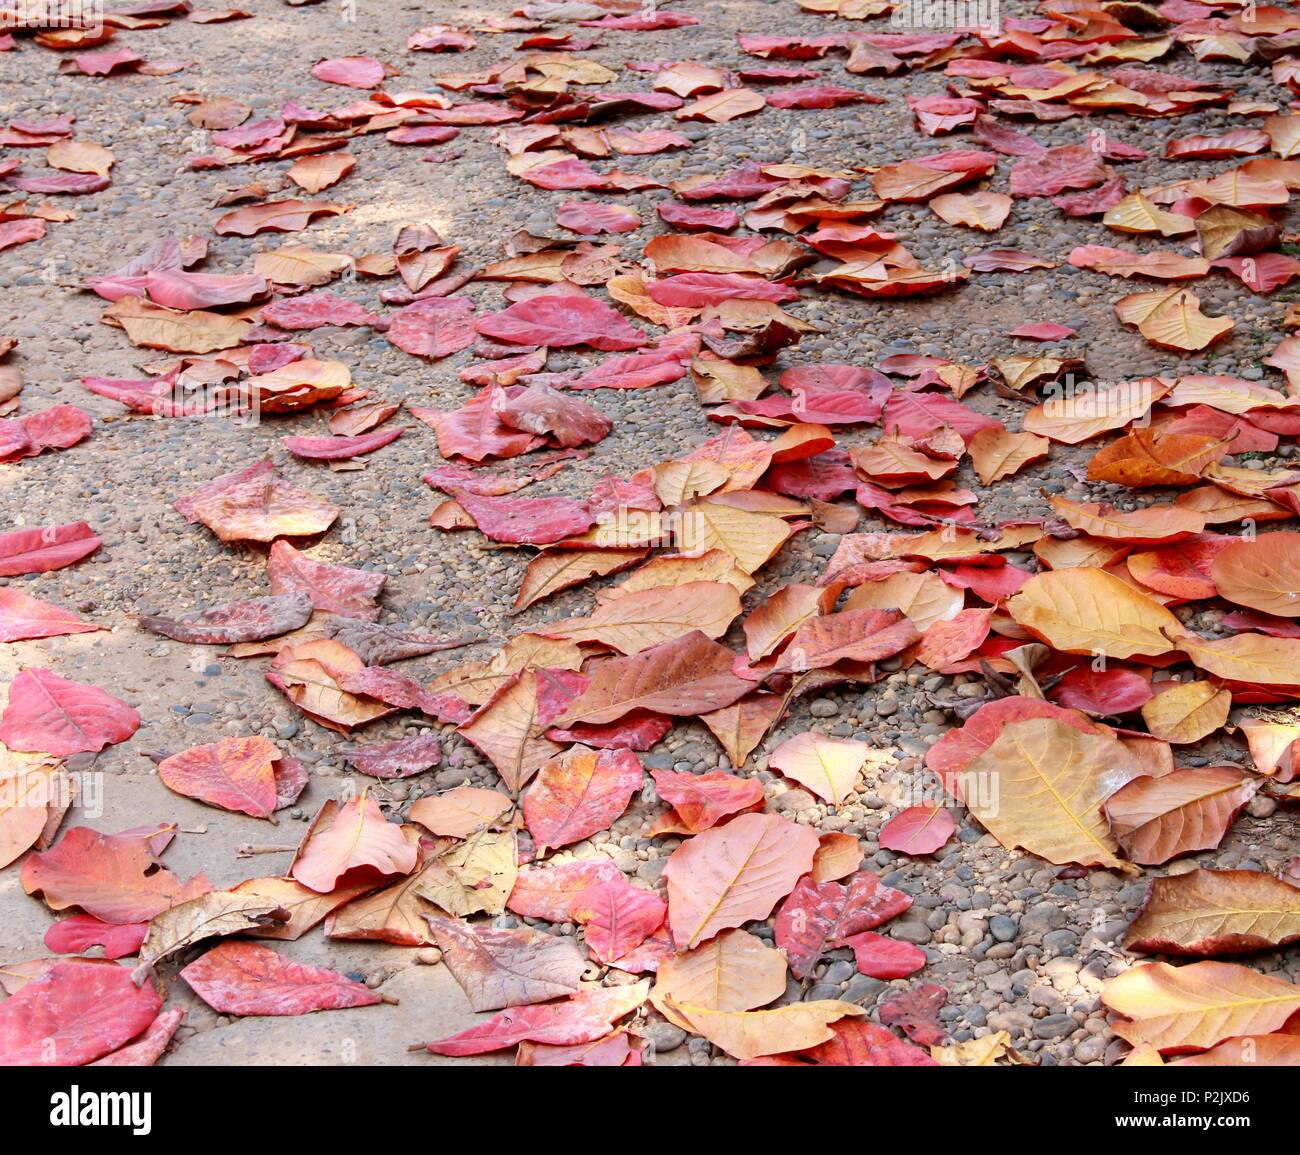 Les feuilles d'Amandes indiennes, feuillage feuille sèche dans la rue chaussée Banque D'Images